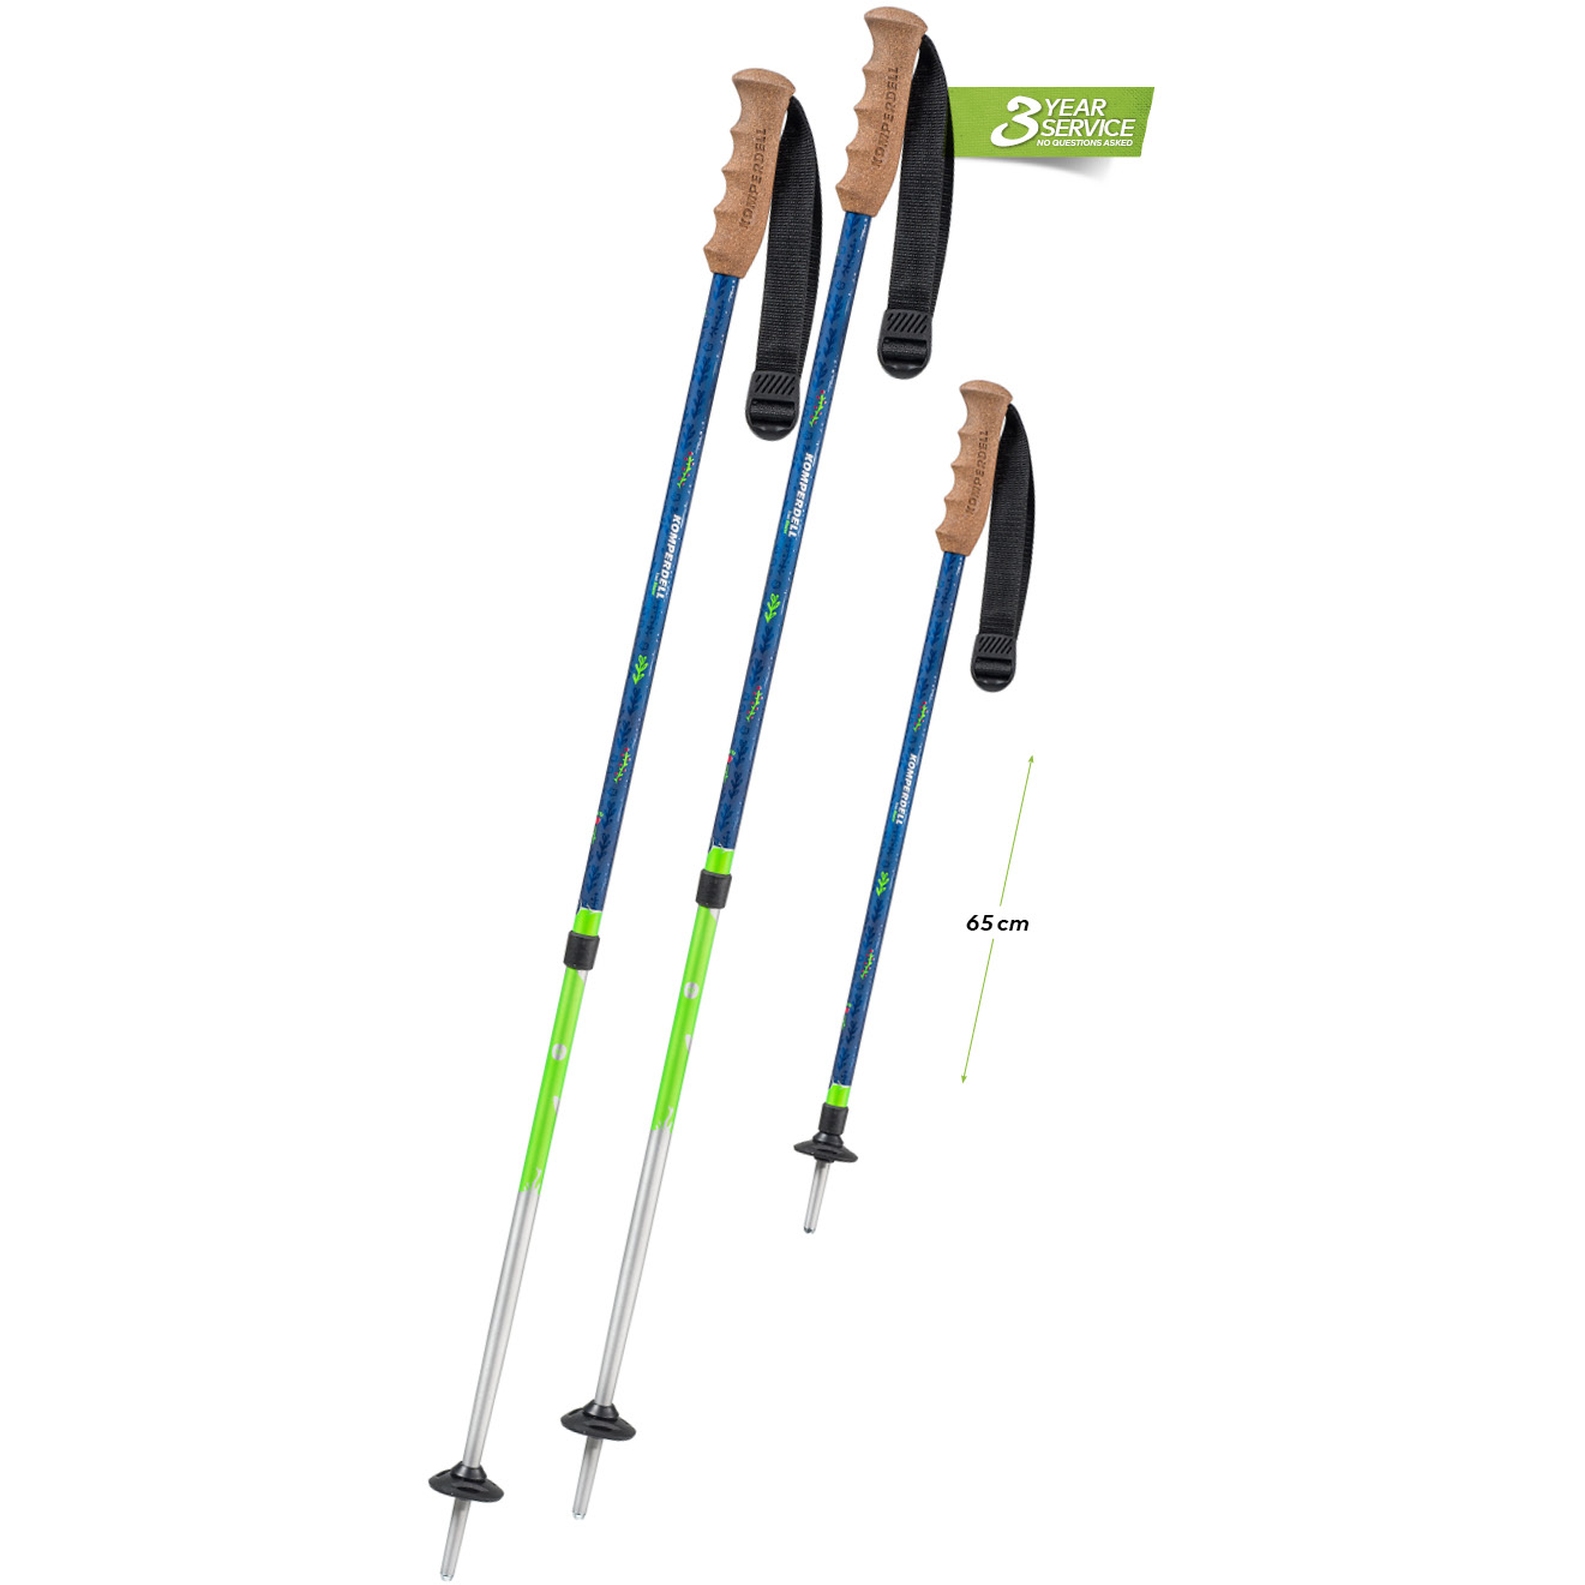 Productfoto van Komperdell Trailblazer Kinder Trekkingstokken (Paar) - blauw/groen